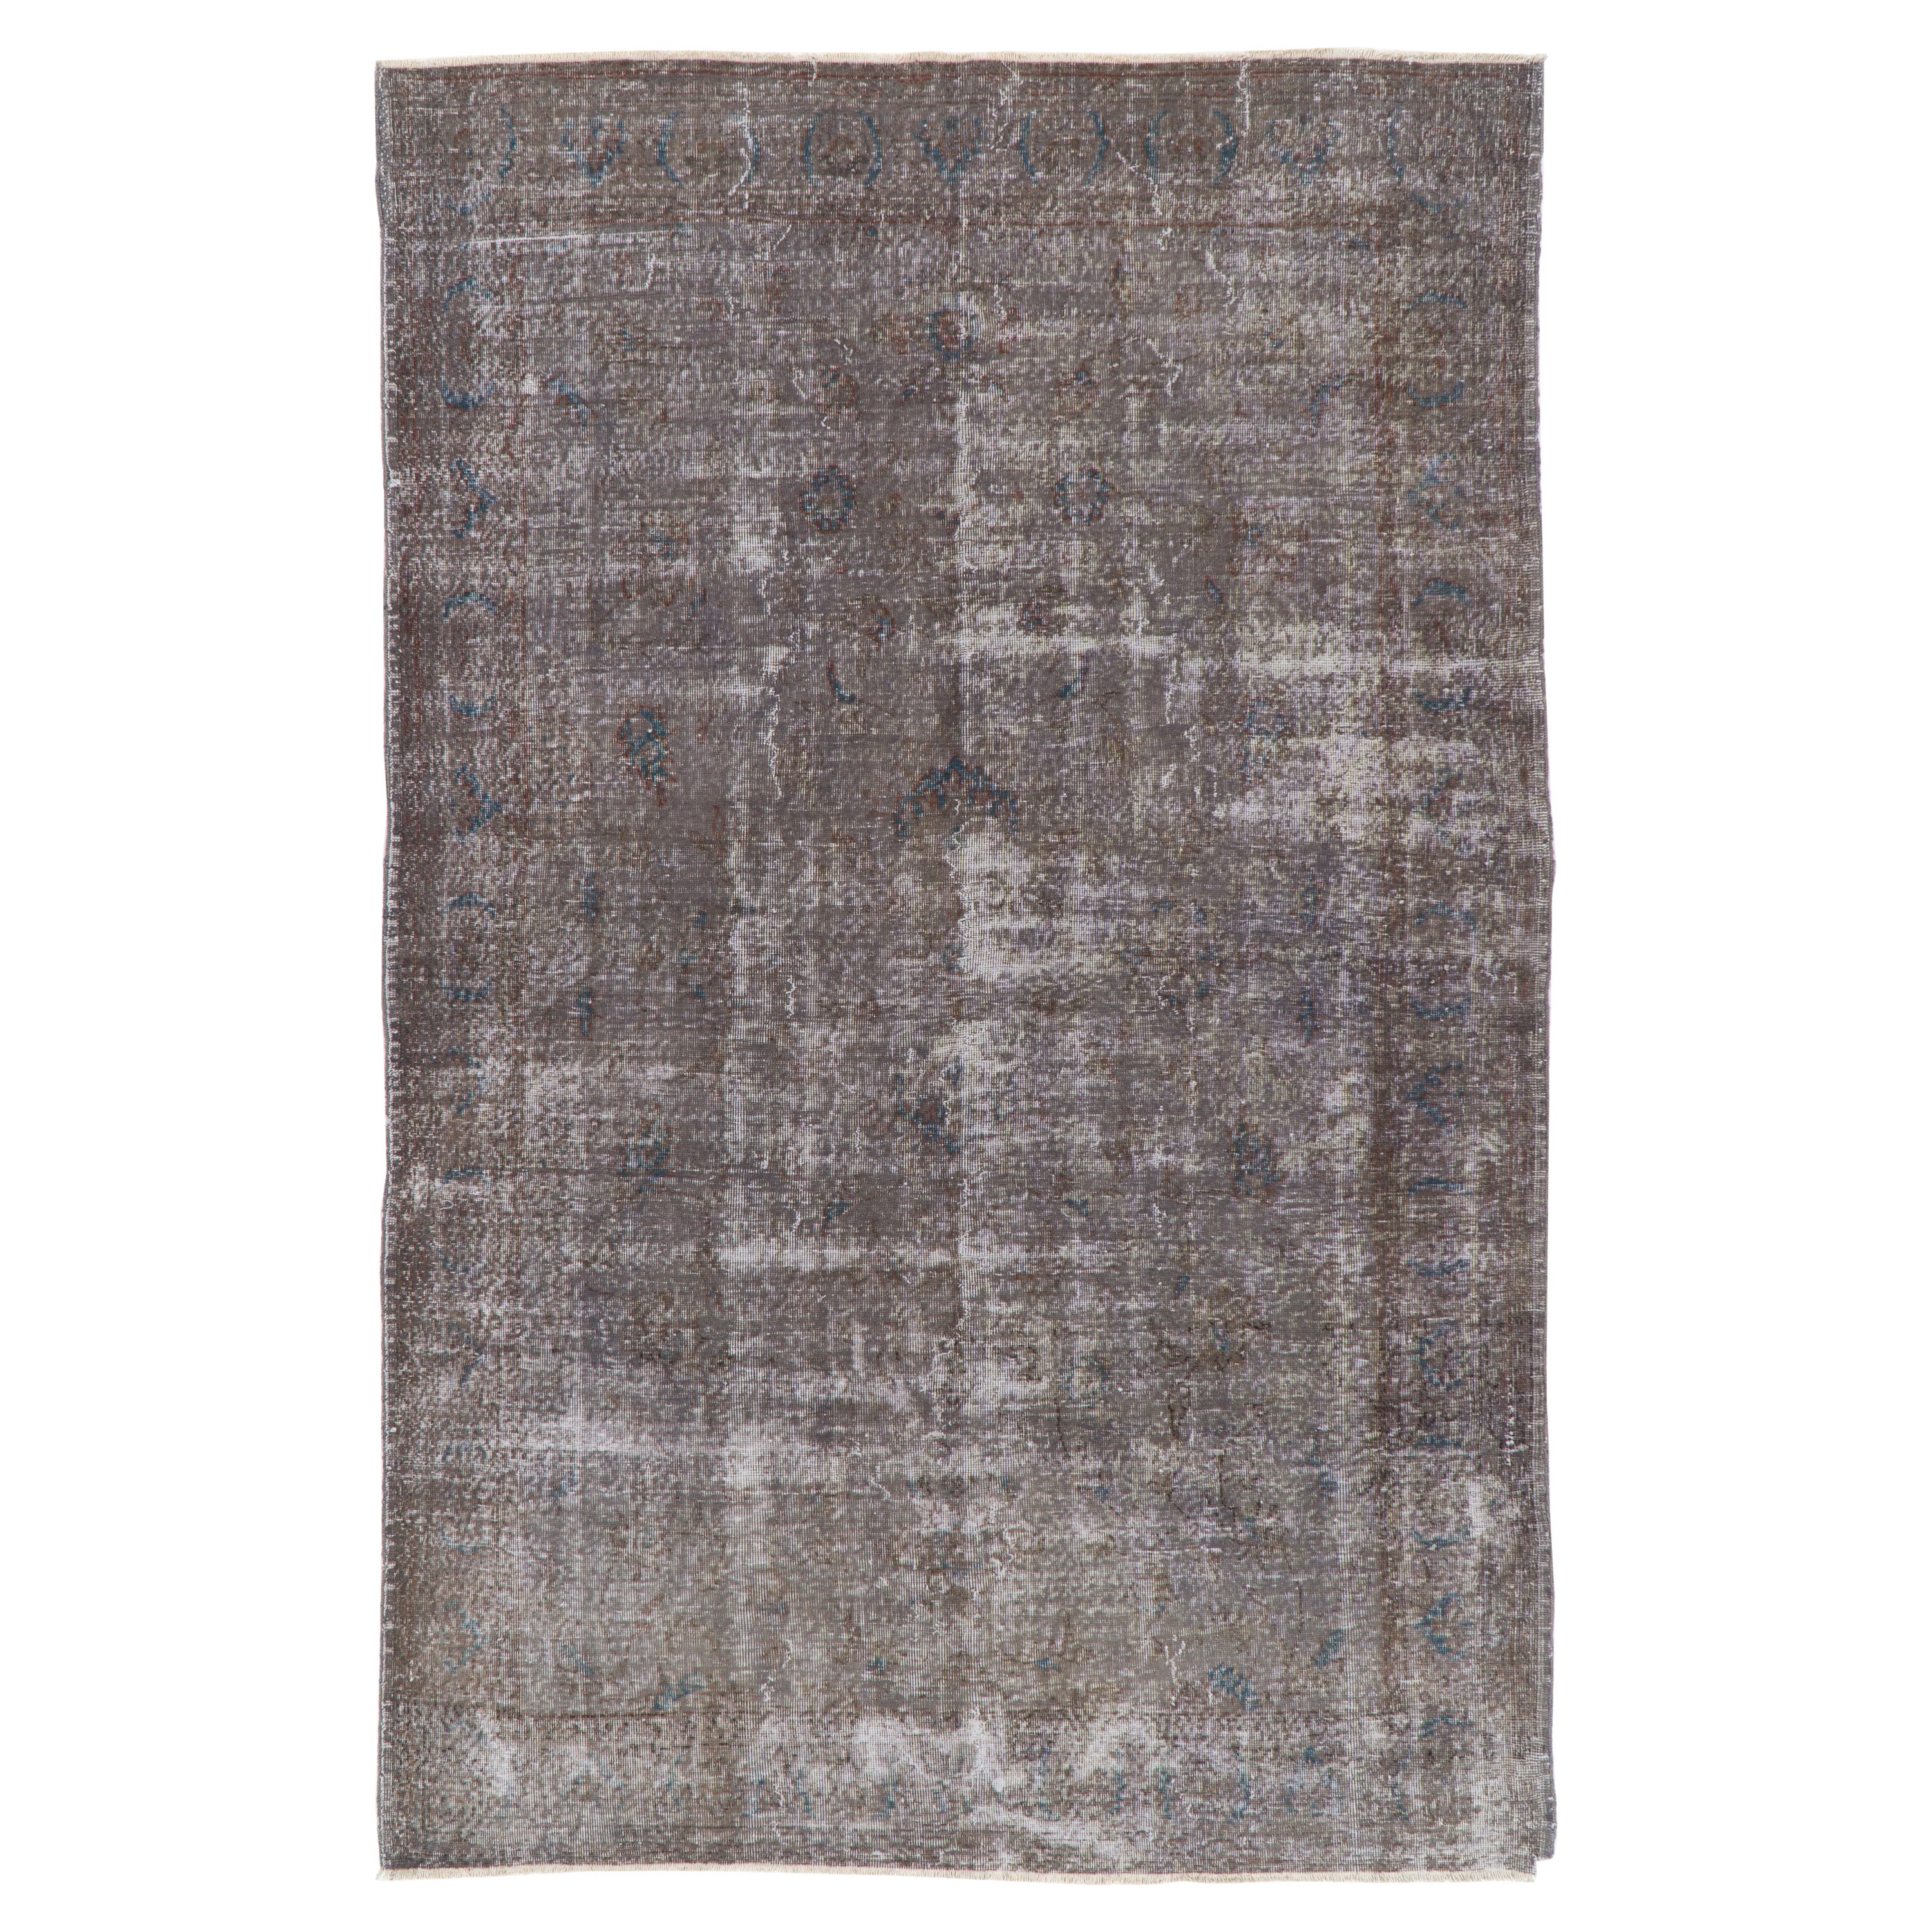 6.4x10 Ft Distressed 1950s Türkische Wolle Bereich Teppich. Handgefertigter taupegrauer Teppich